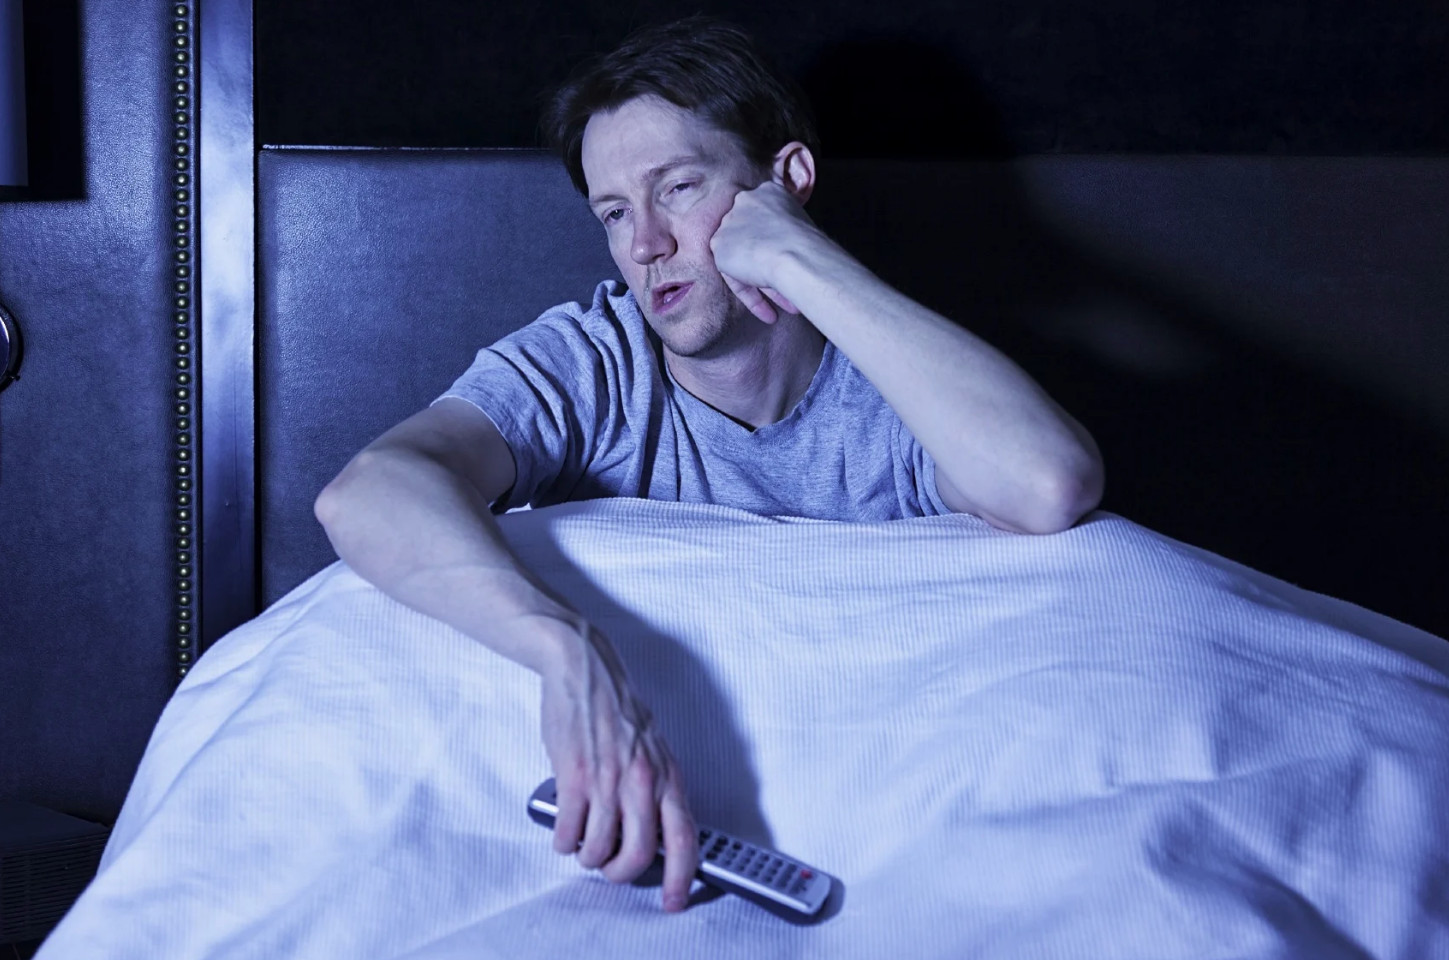 Αυπνίες: Τι δεν πρέπει να κάνετε πριν κοιμηθείτε για να απολαύσετε τον ύπνο σας